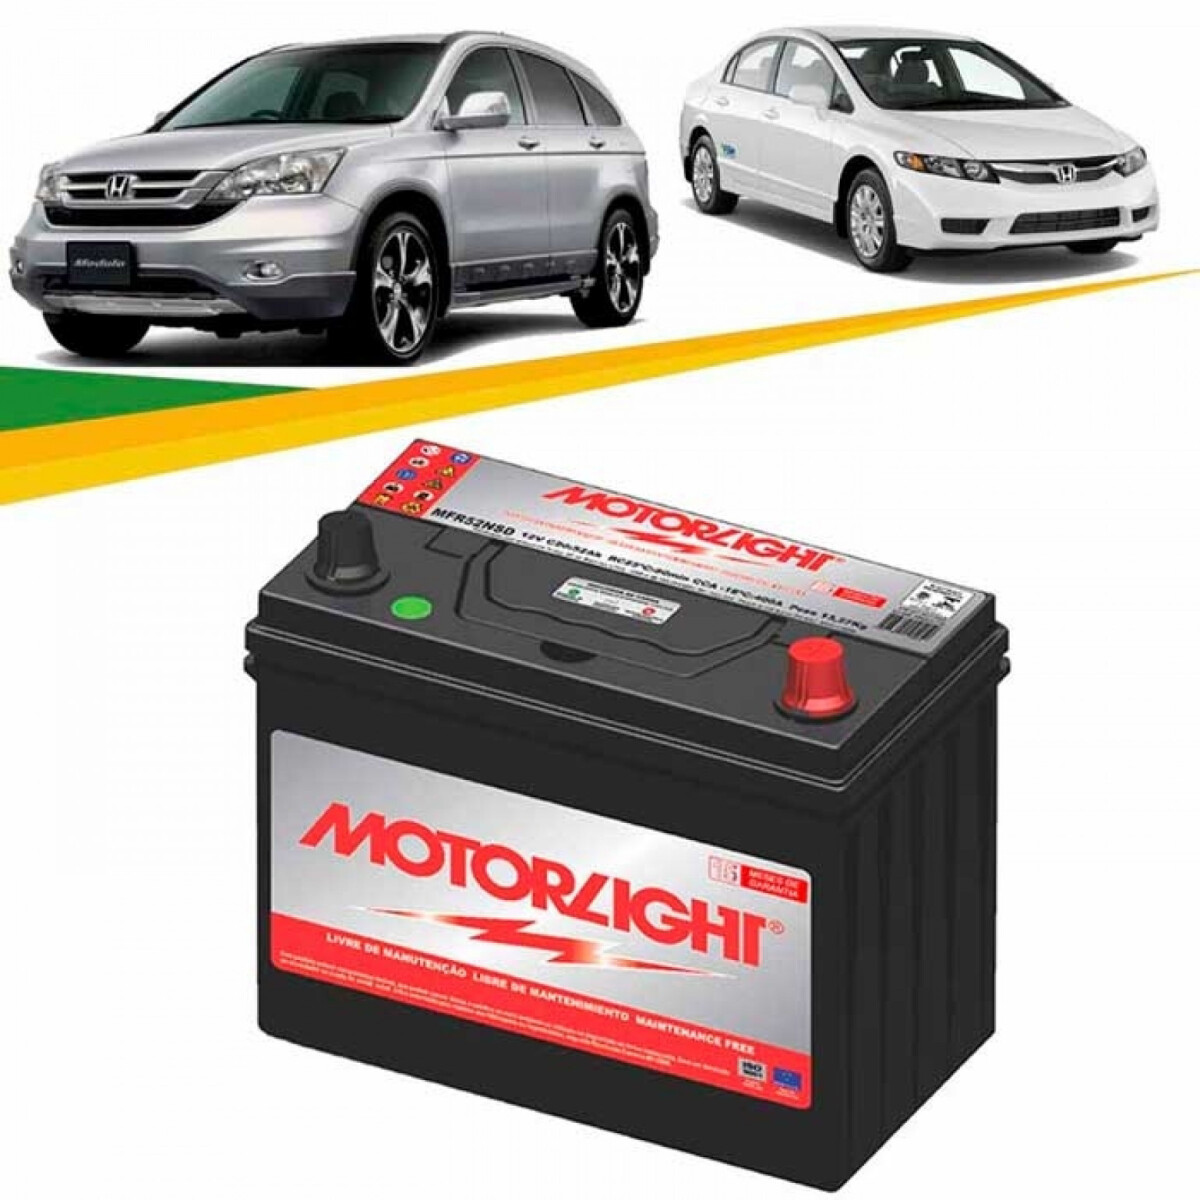 Bateria Motorlight - 130amp Polo Positivo Derecho 